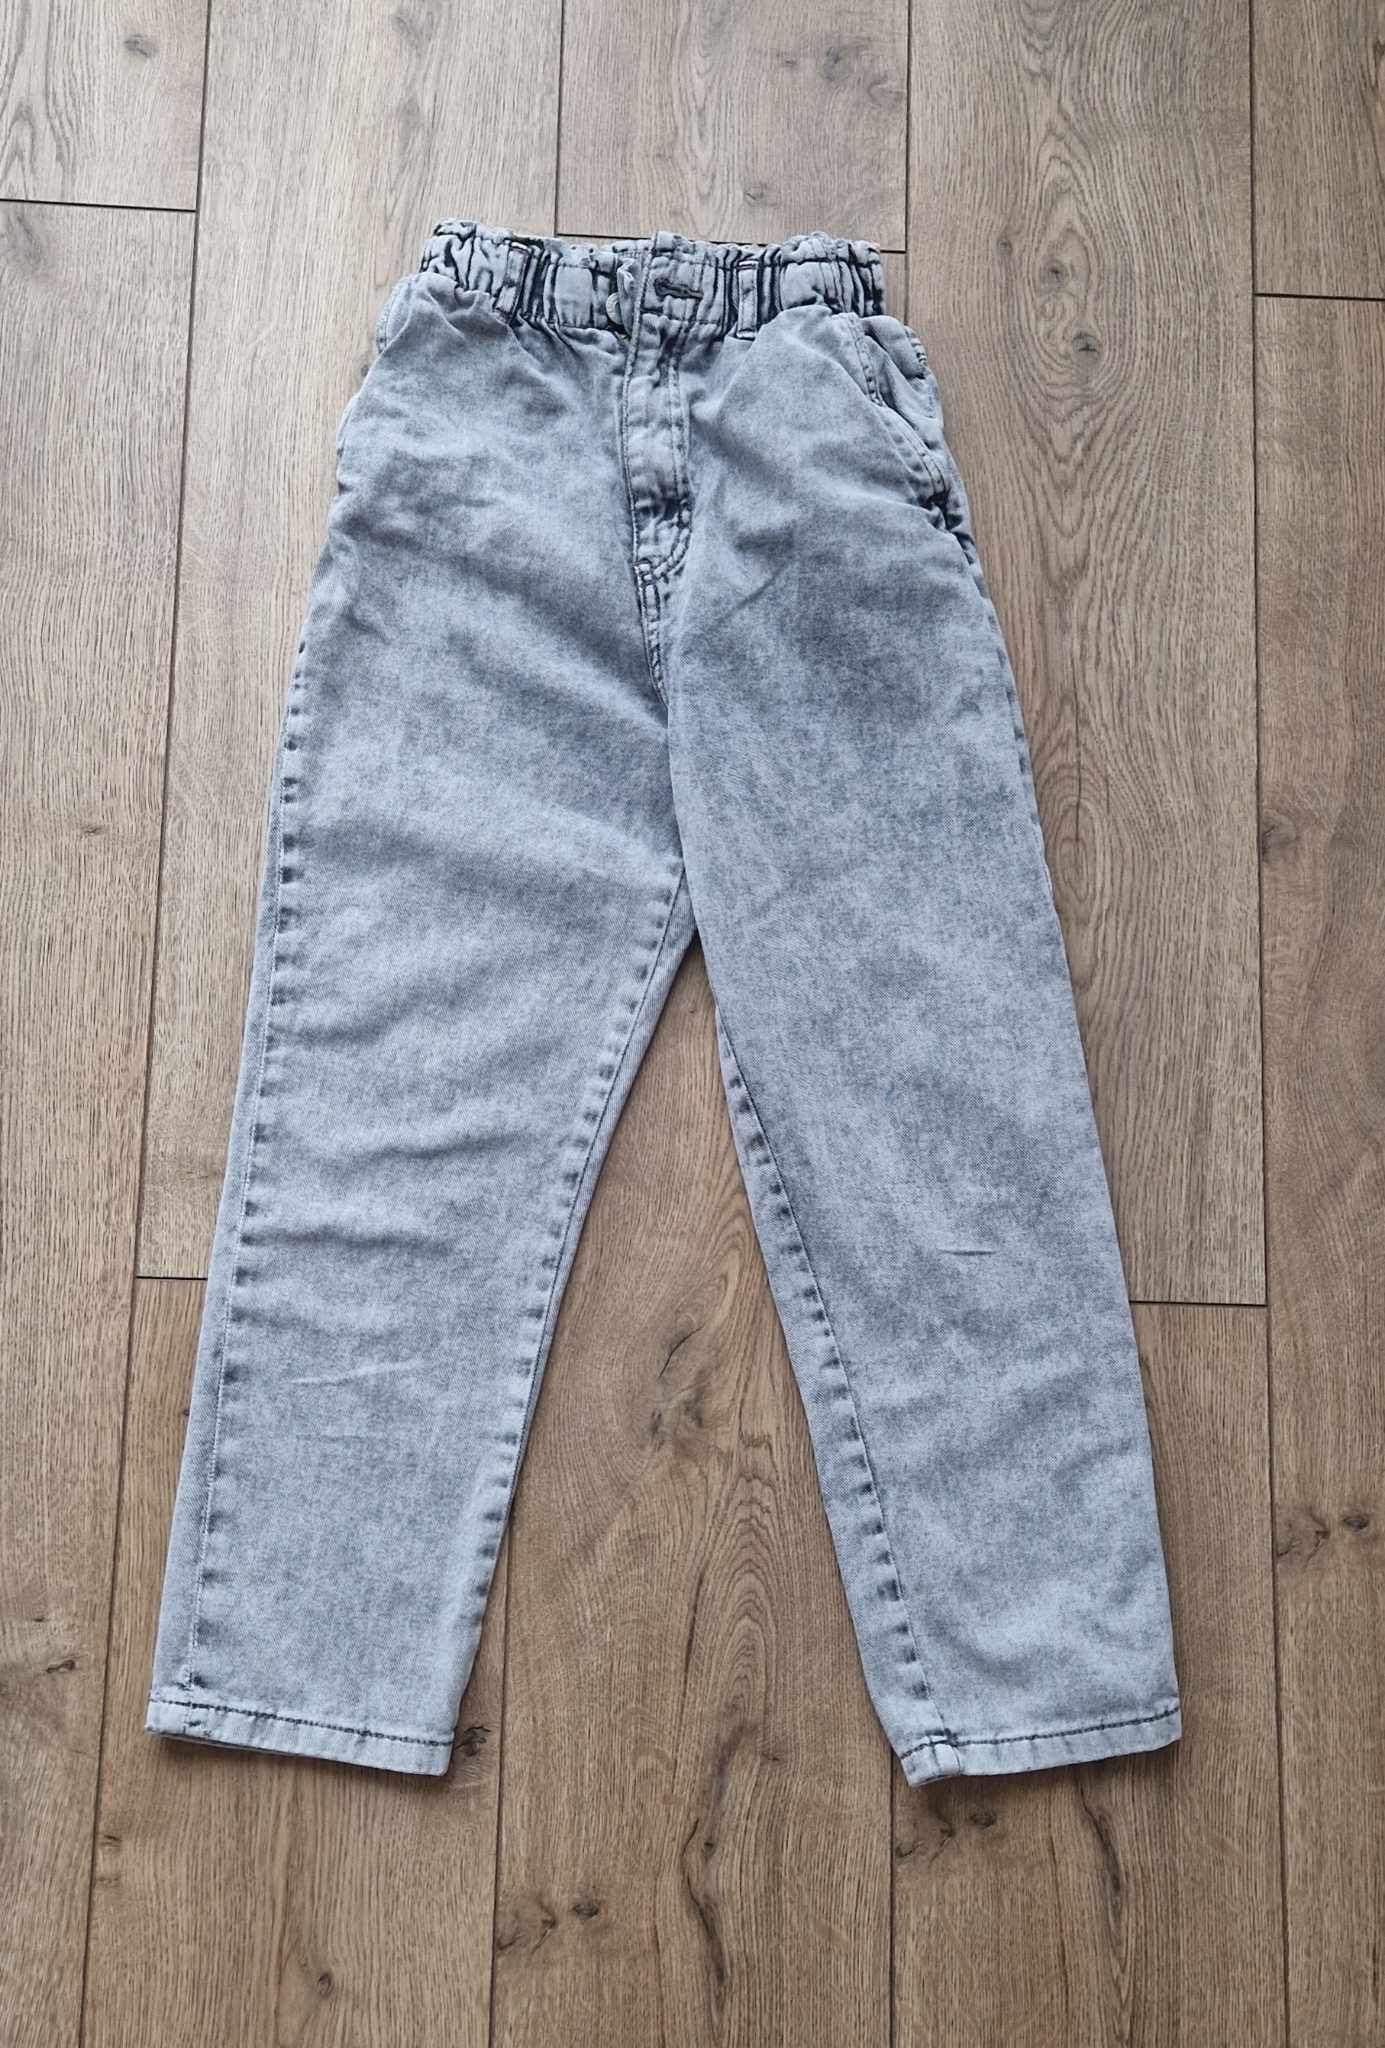 Spodnie jeansy dla dziewczynki baggy szeroka nogawka  H&M  140/146